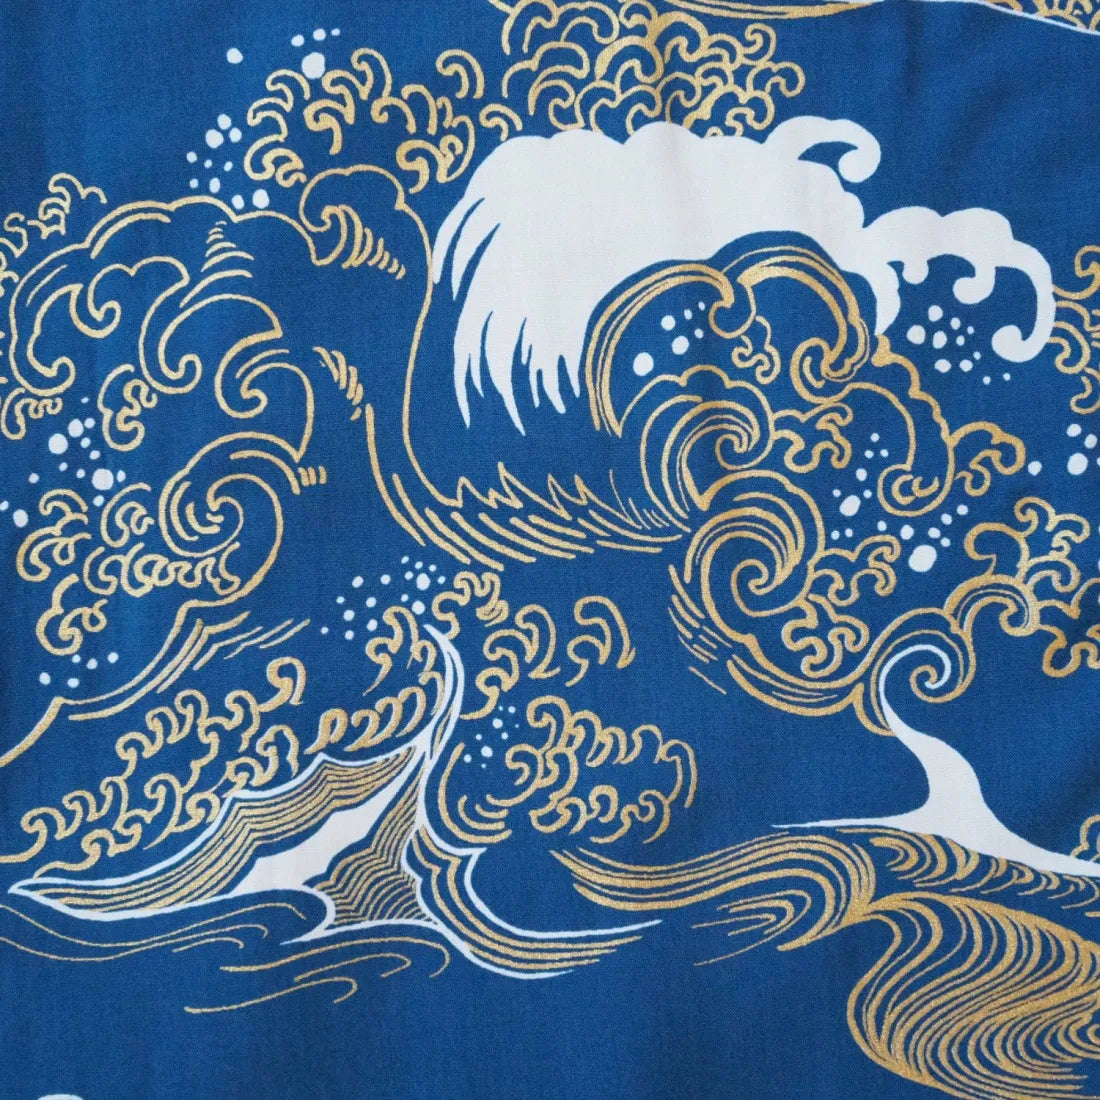 Island Breeze Crane Blue Hawaiian Rayon Shirt - Made In Hawaii